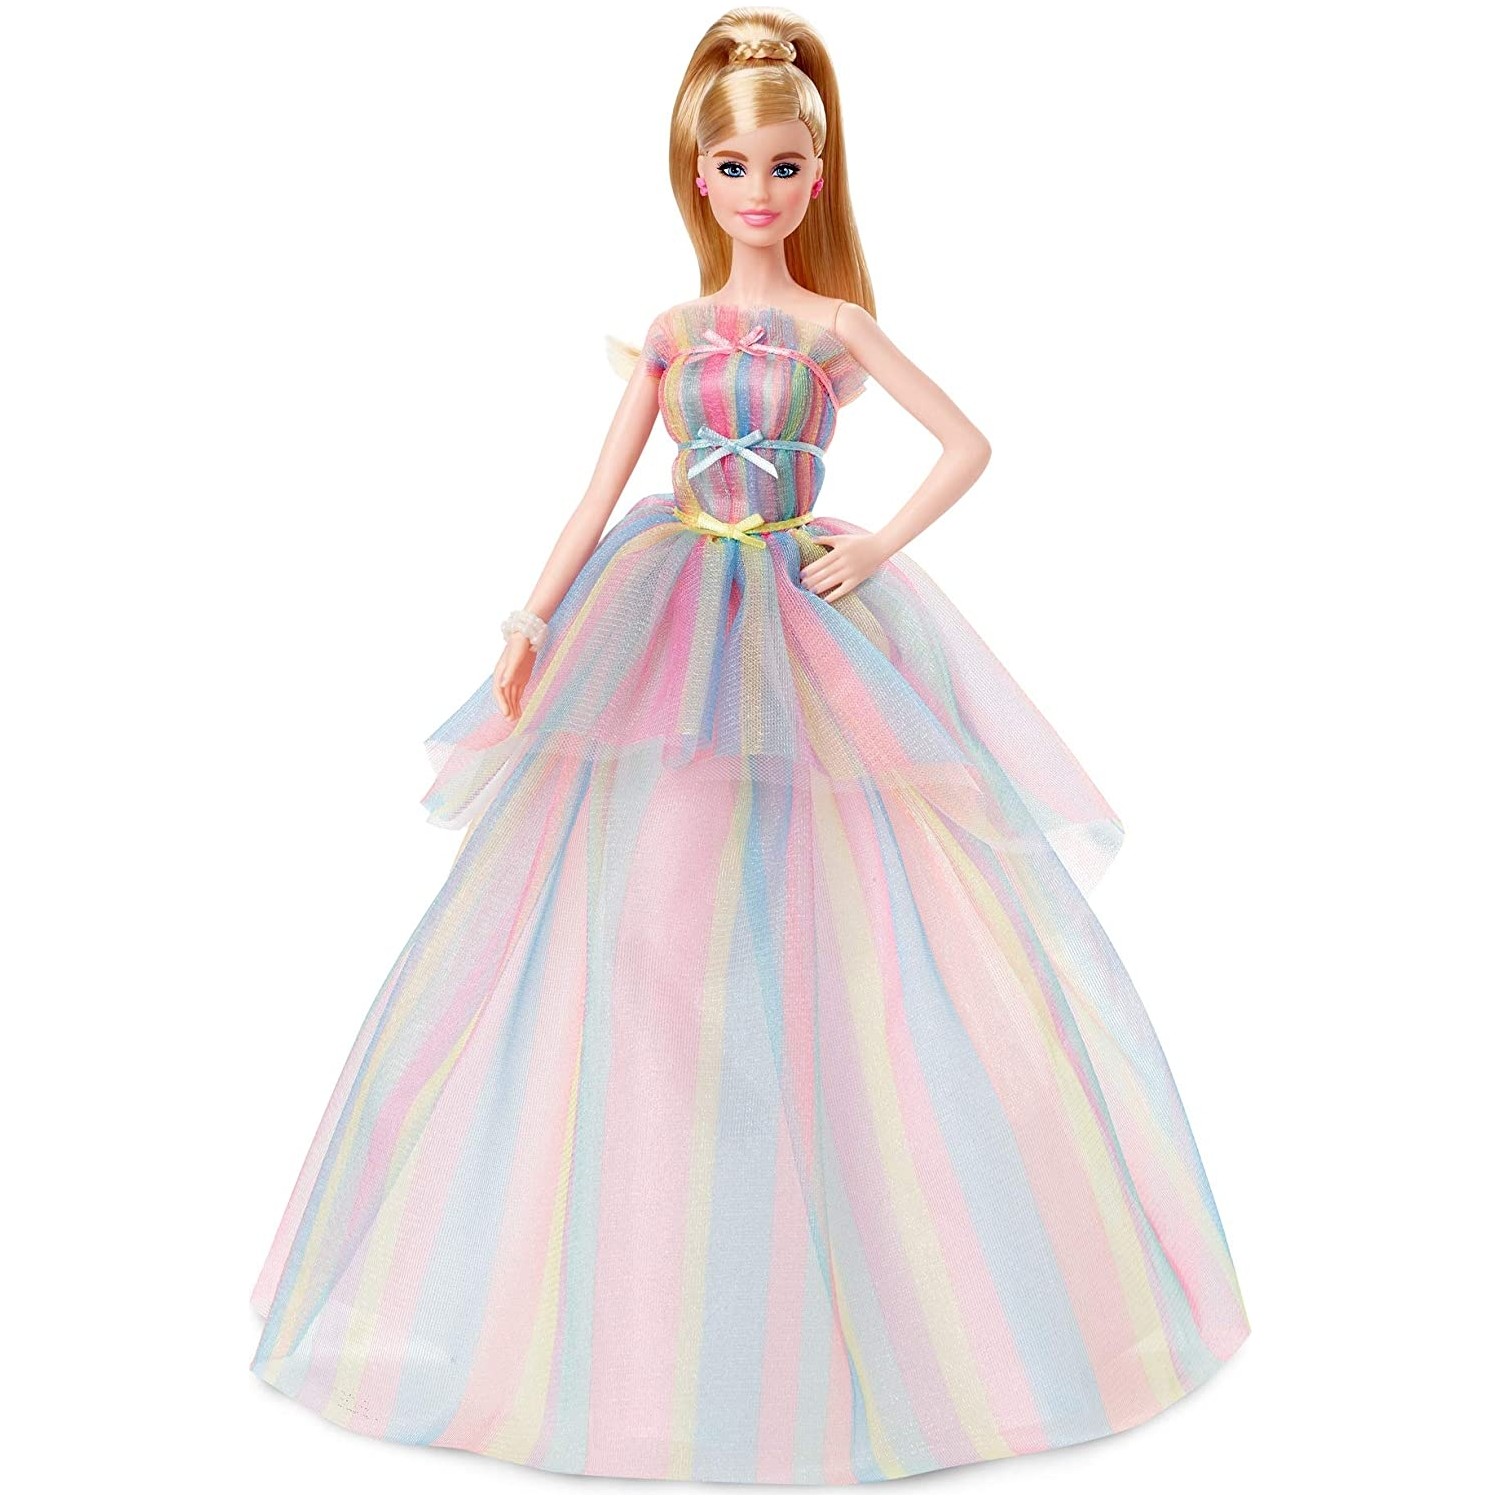 Кукла Barbie Birthday Princess GHT42 кукла barbie астрофизик gdm47